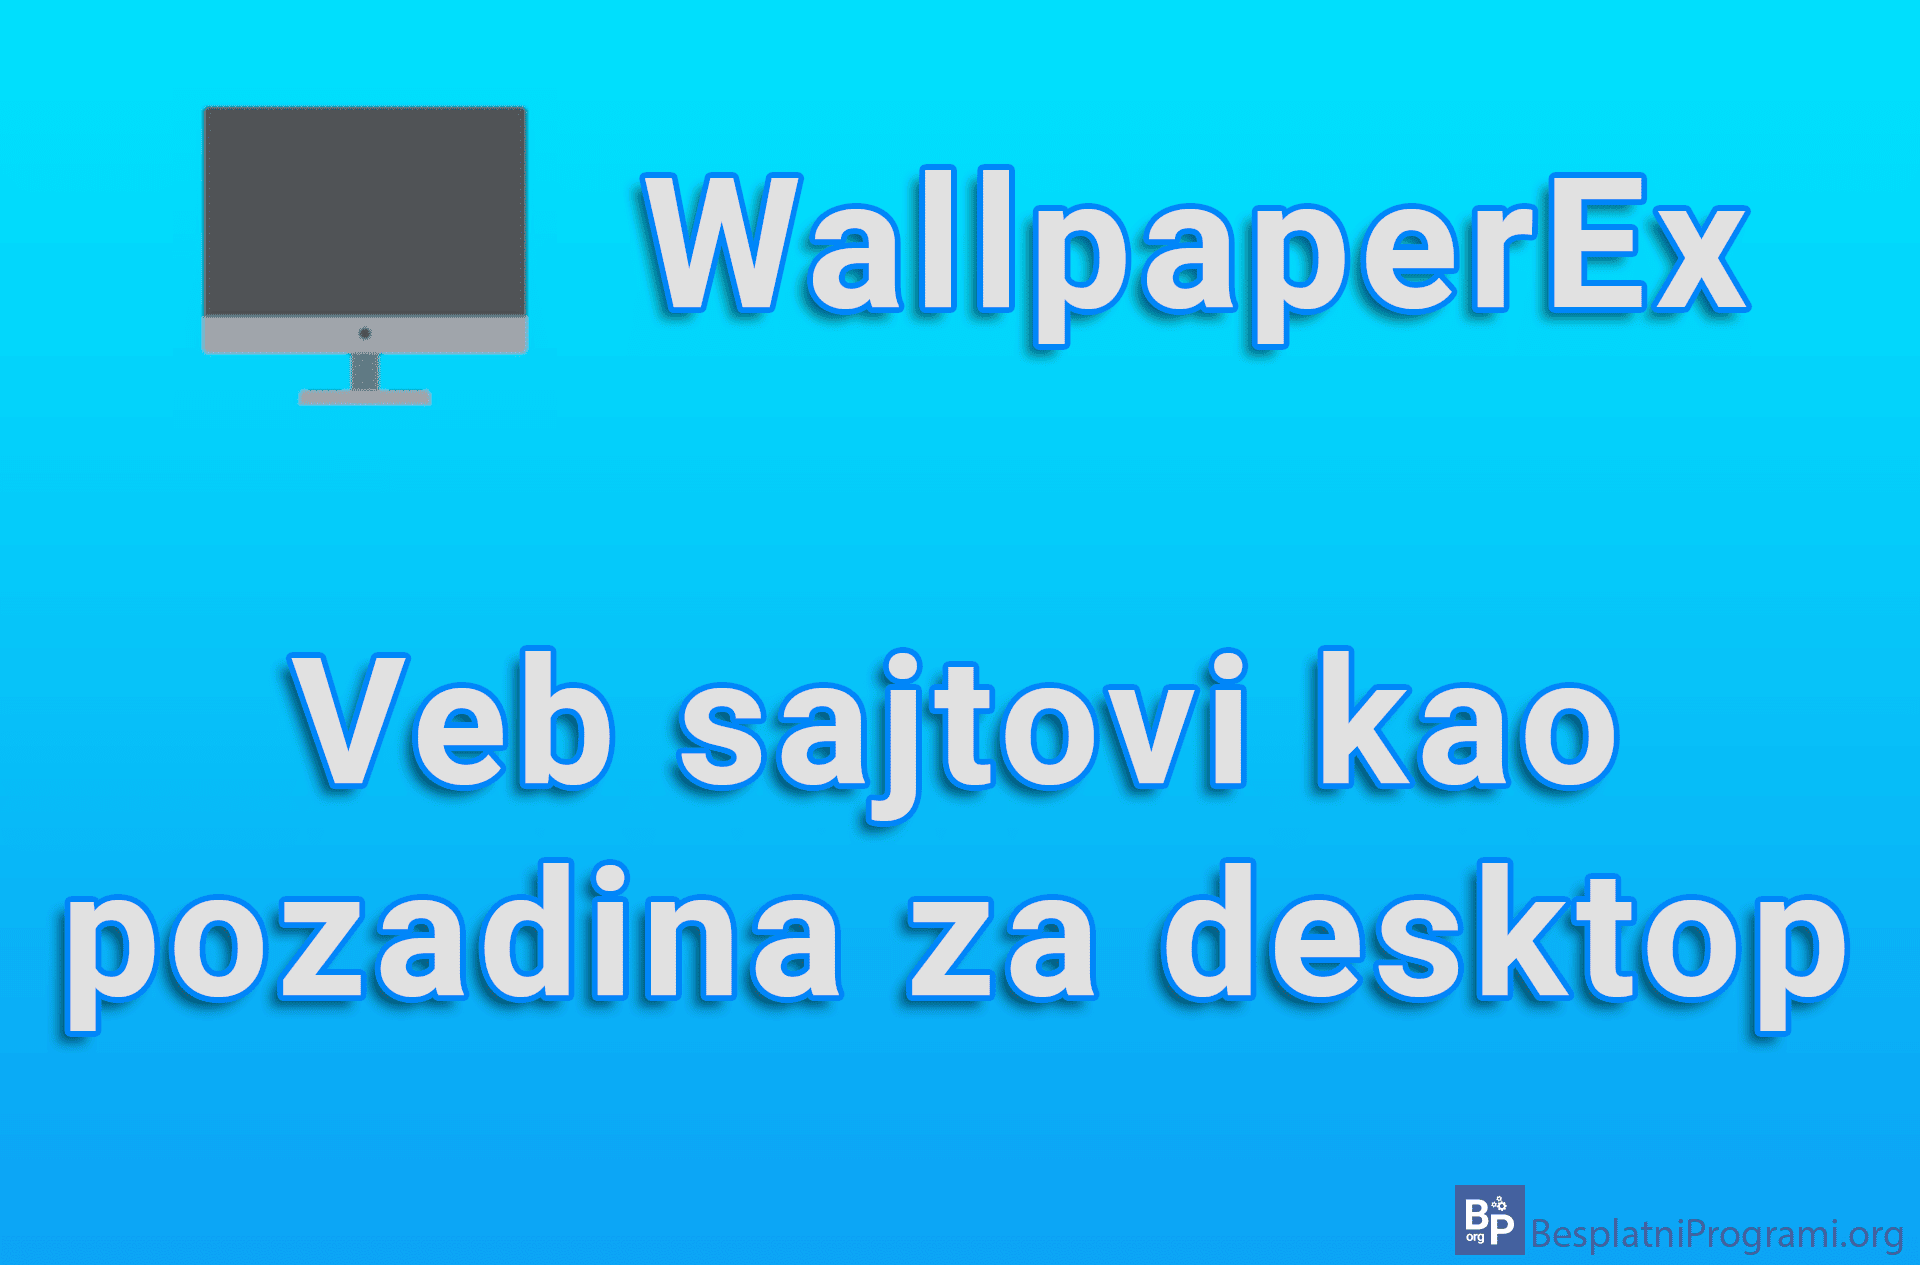 WallpaperEx - Veb sajtovi kao pozadina za desktop